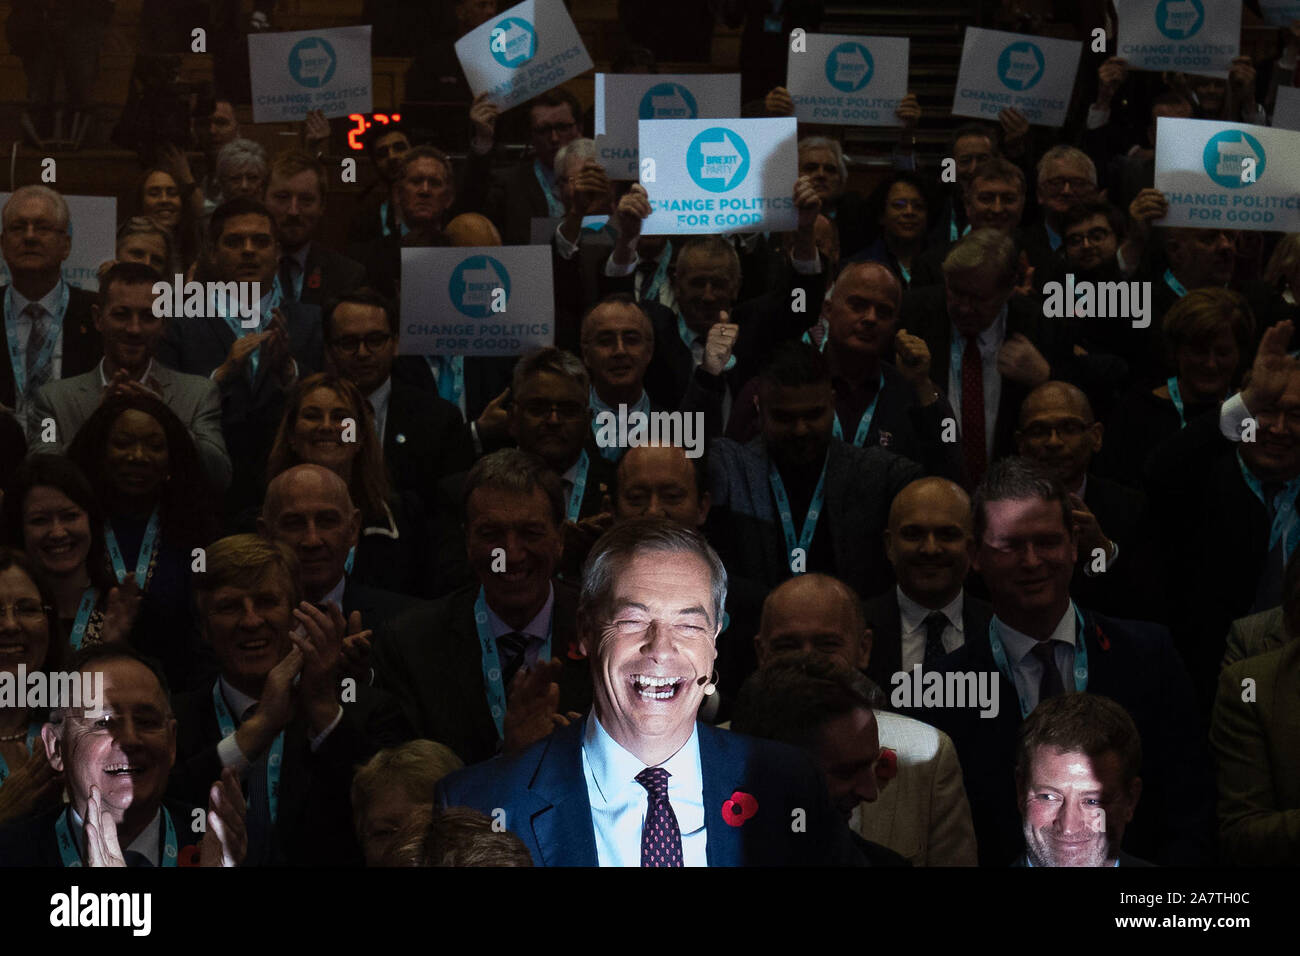 Brexit chef de parti Nigel Farage (centre) lors d'une réunion pour présenter ses candidats parlementaire du parti (PPC) en vue de la prochaine élection générale, dans le Centre Emmanuel, Westminster, Londres. Banque D'Images